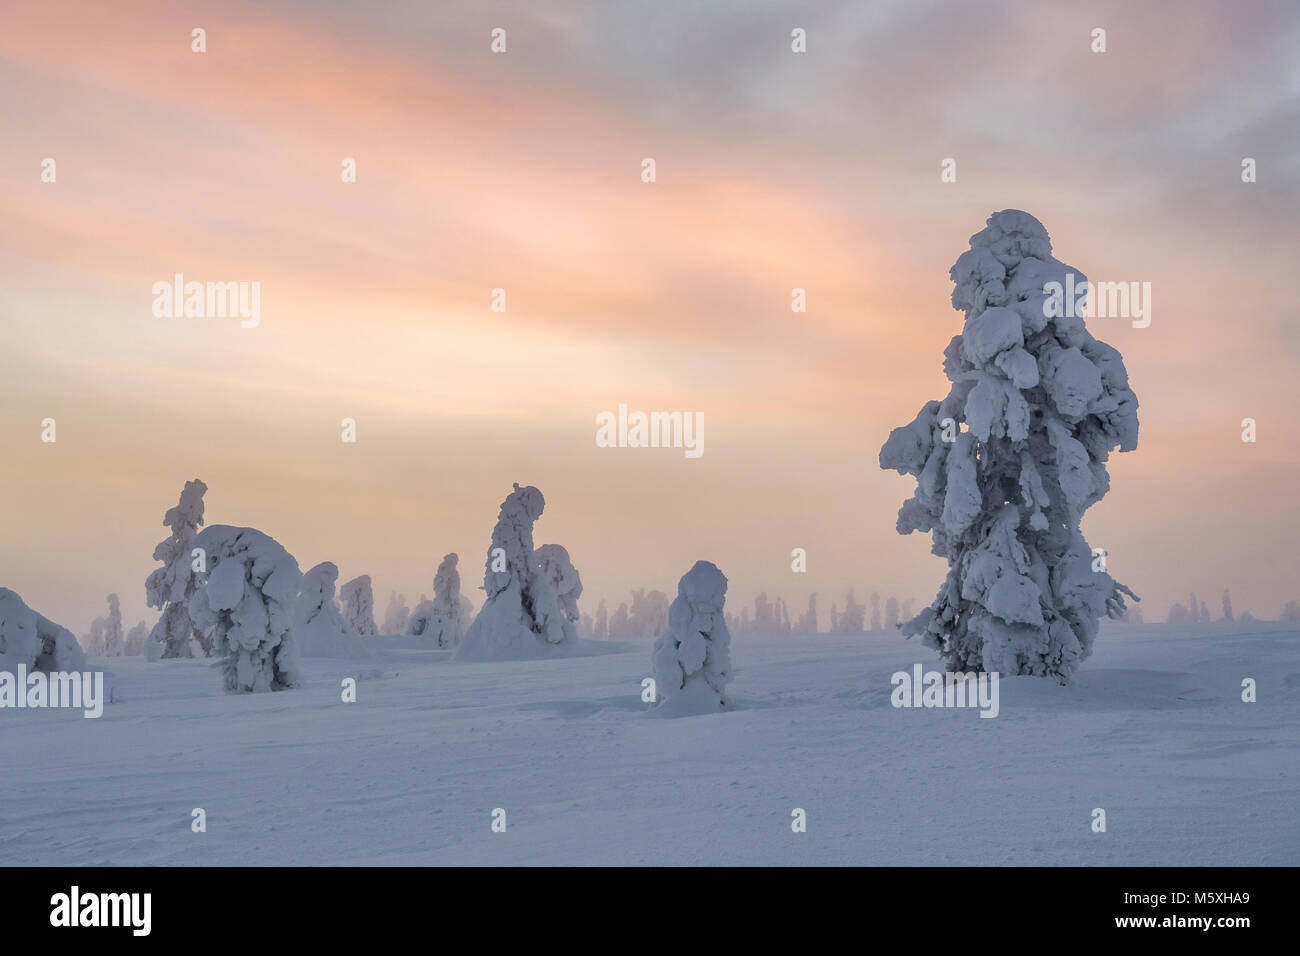 Alberi innevati al tramonto, paesaggio invernale, Pyhä-Luosto National Park, Lapponia, Finlandia Foto Stock